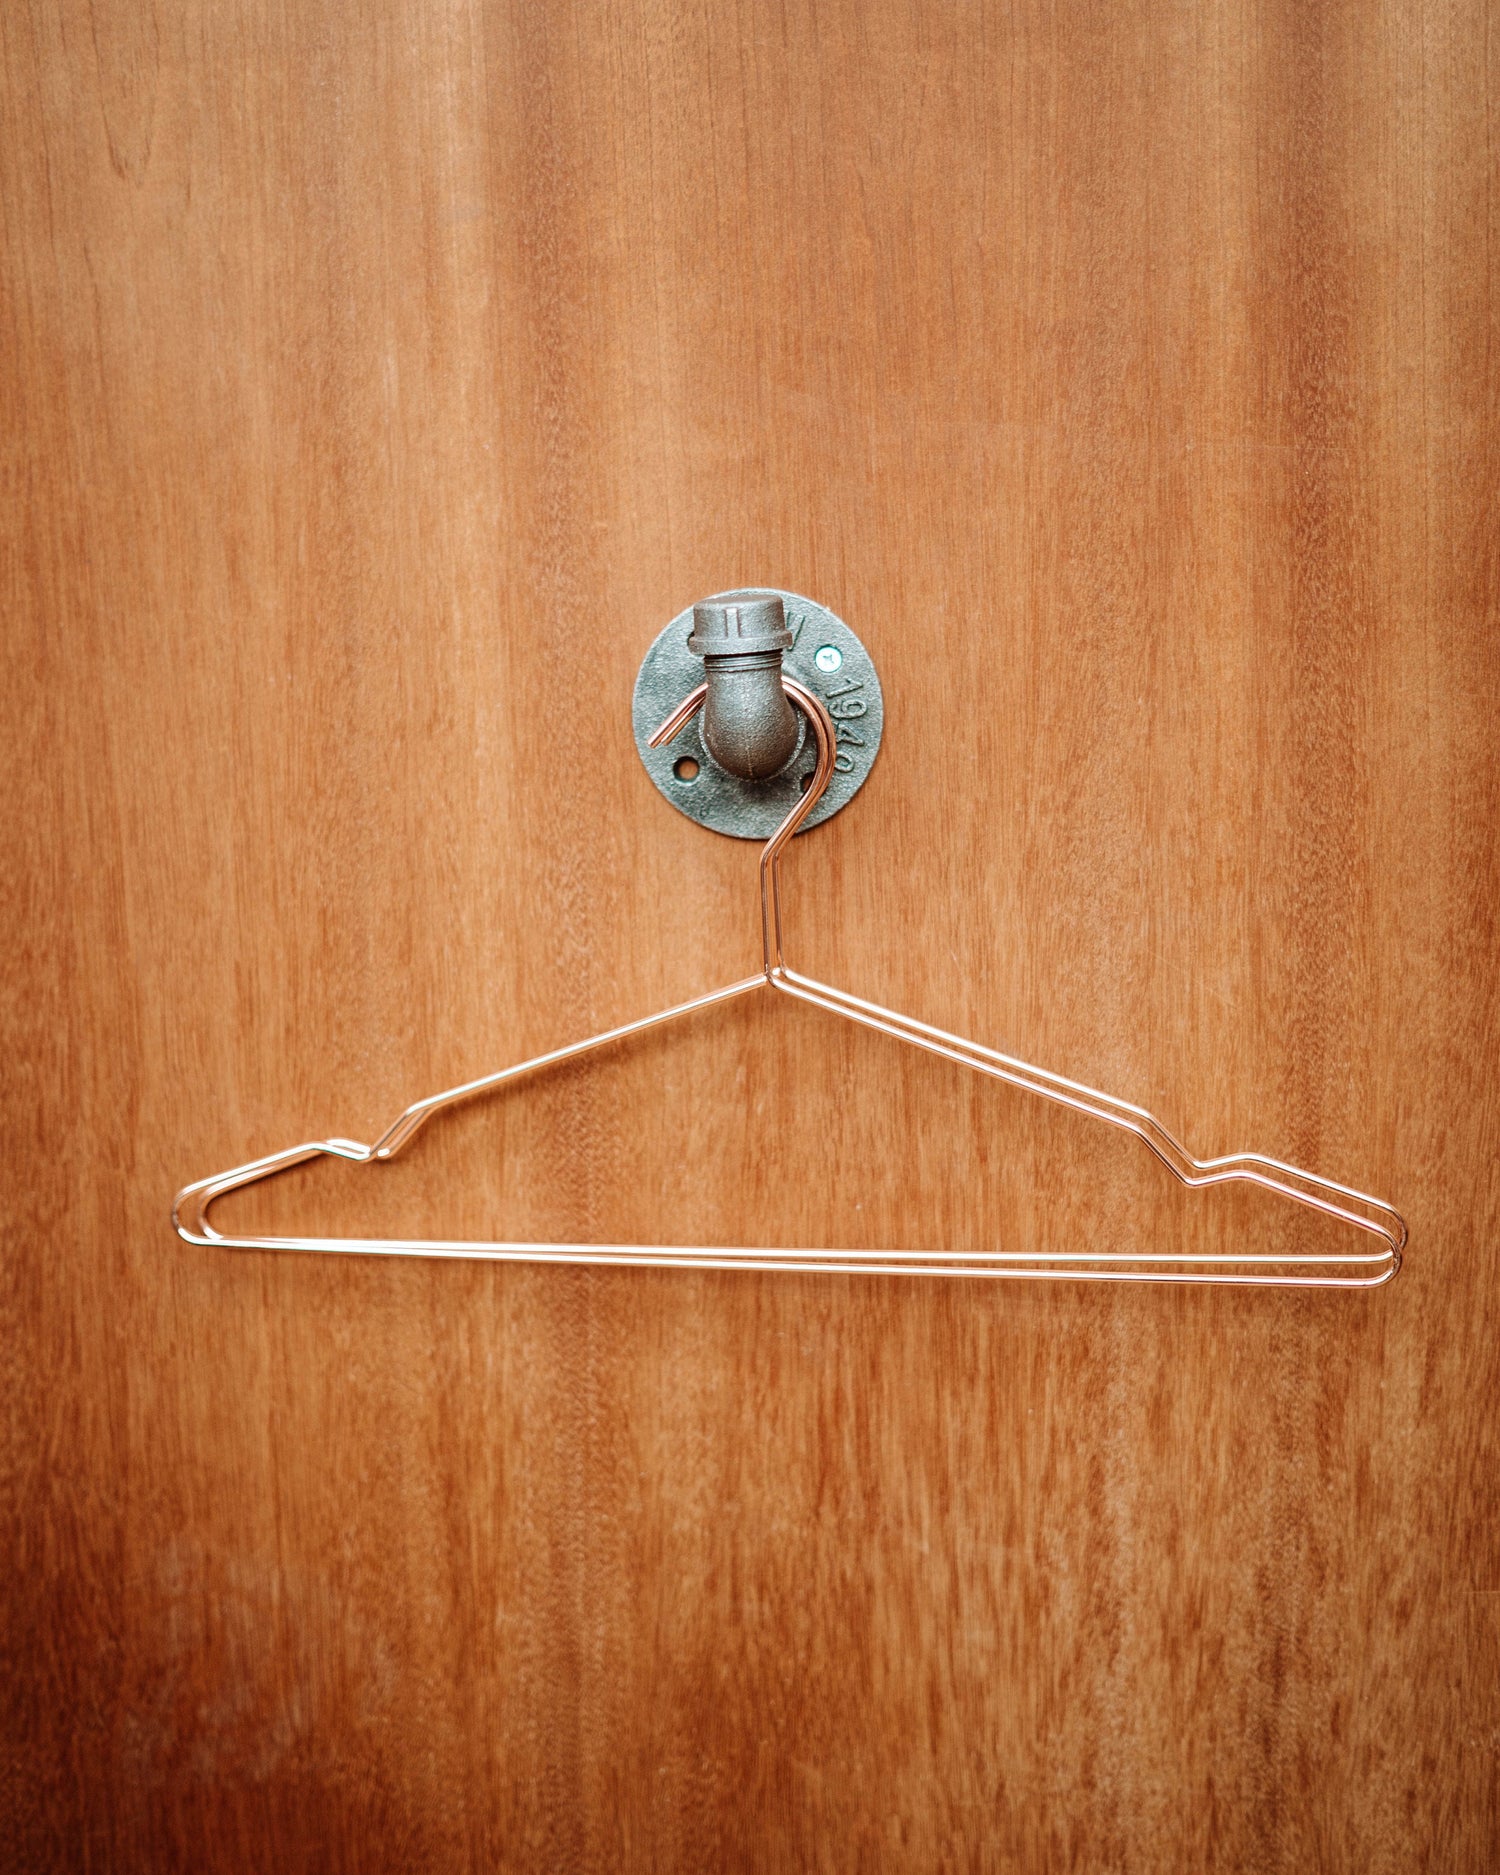 Functional Coat Hooks, highlighting coat hangers, door hooks, and wall coat rack designs.